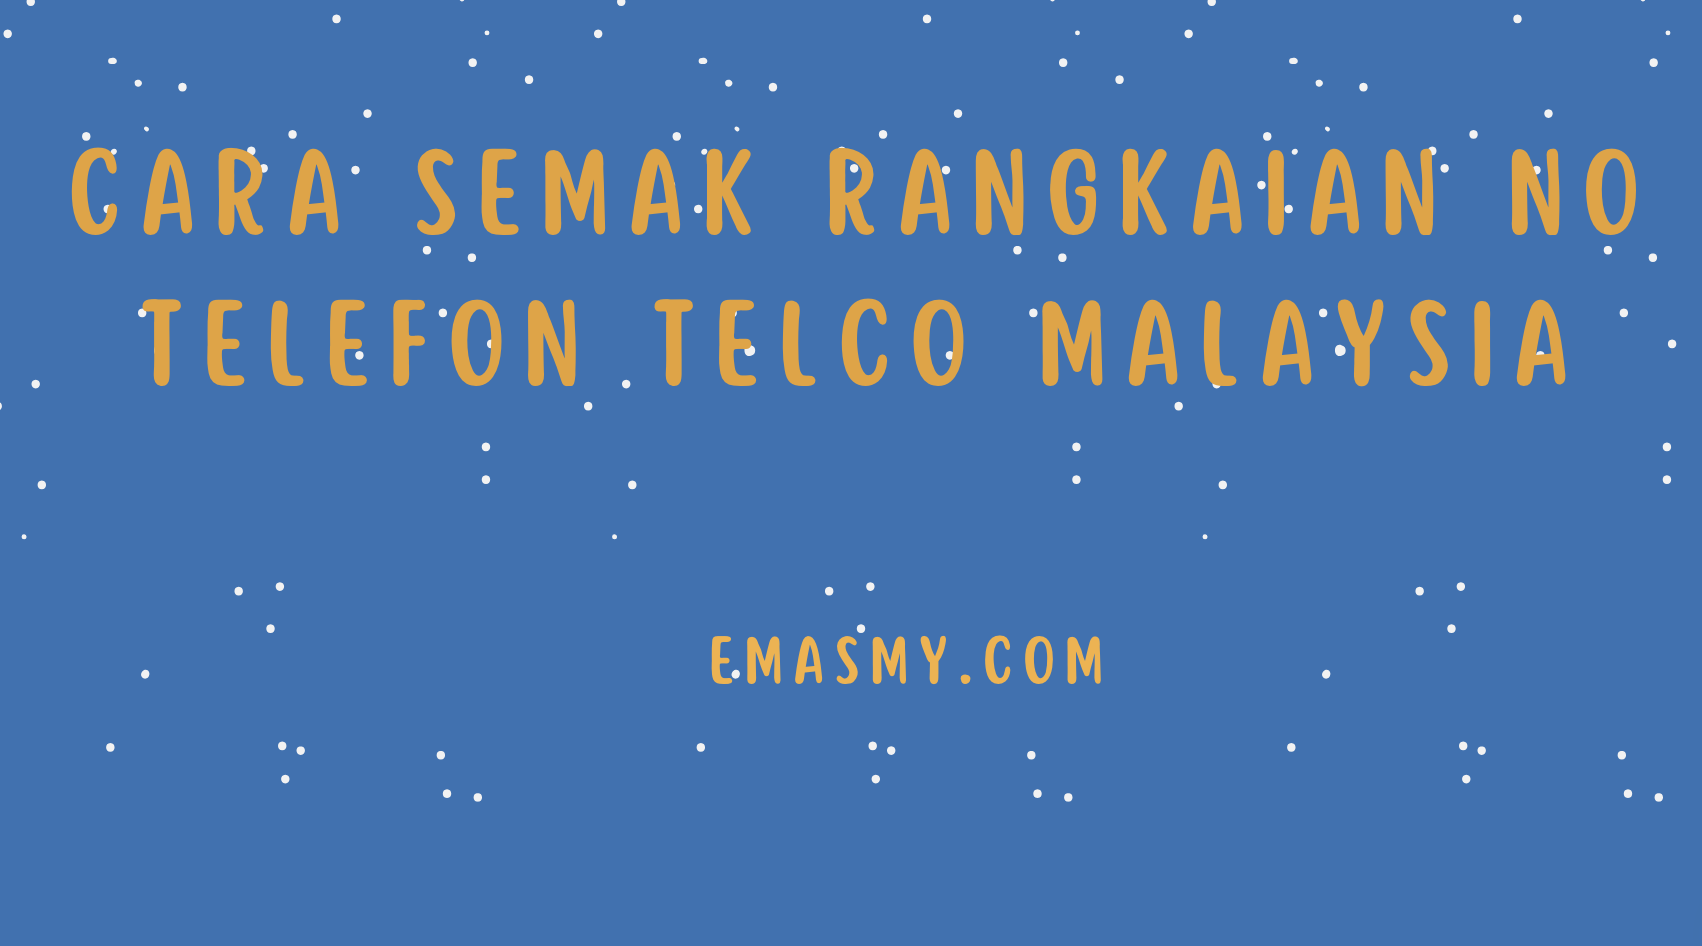 Cara Semak Rangkaian No Telefon Telco Malaysia